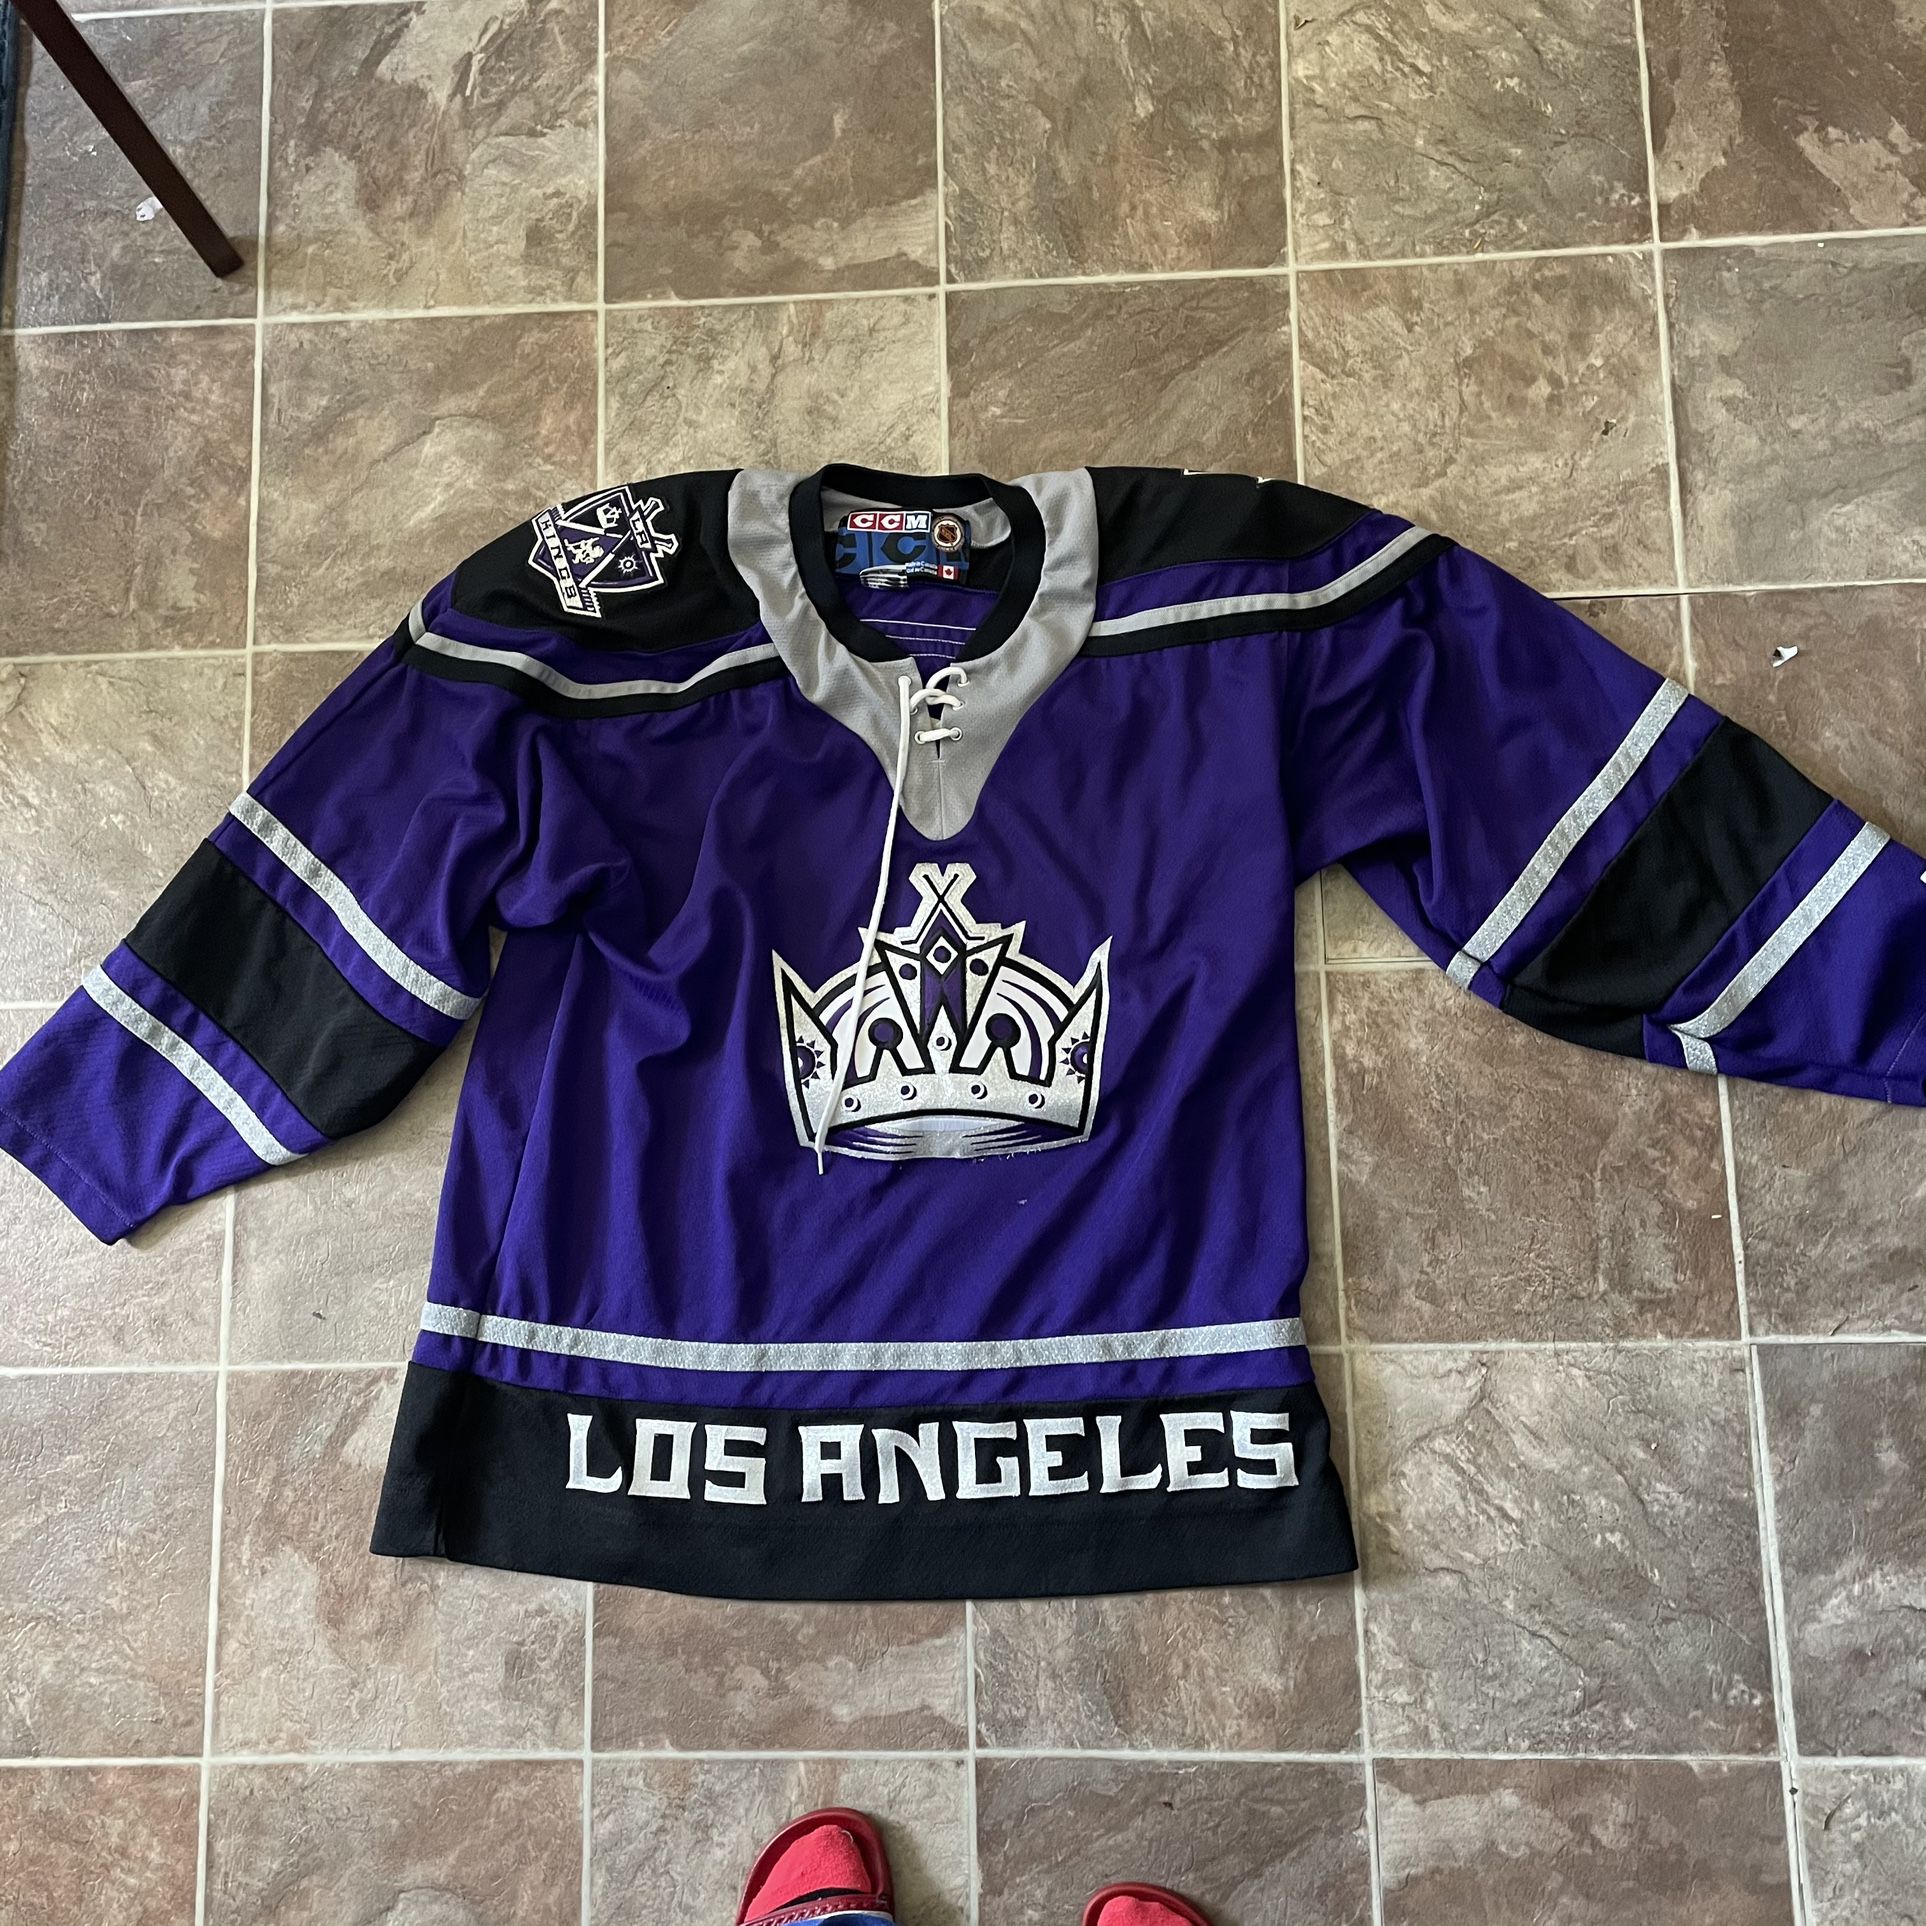 LA kings jersey